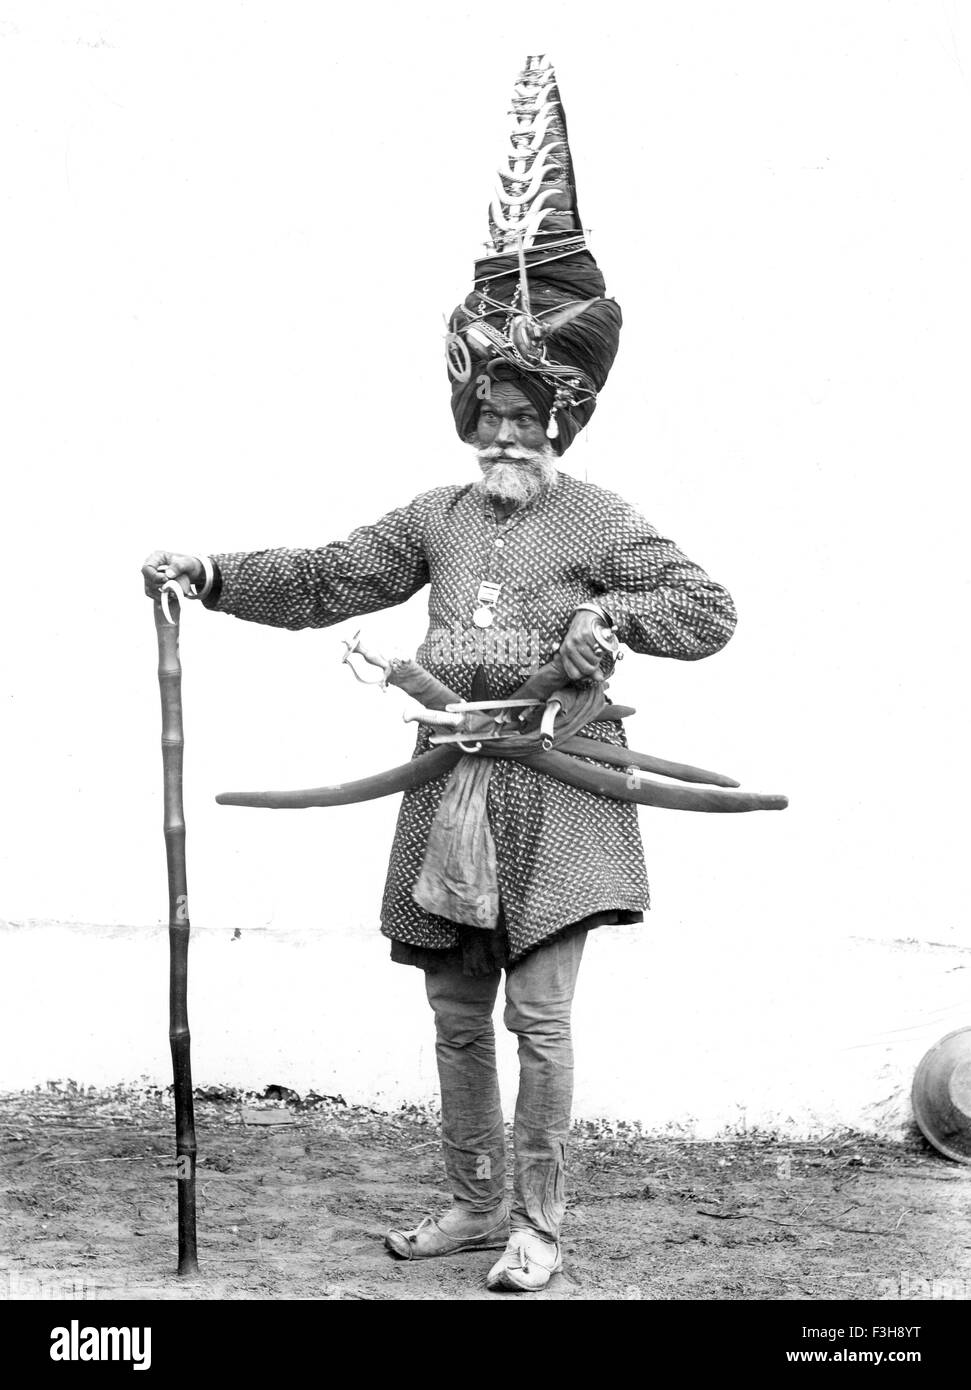 Soldat de l'armée indienne vétéran vers 1905 Banque D'Images